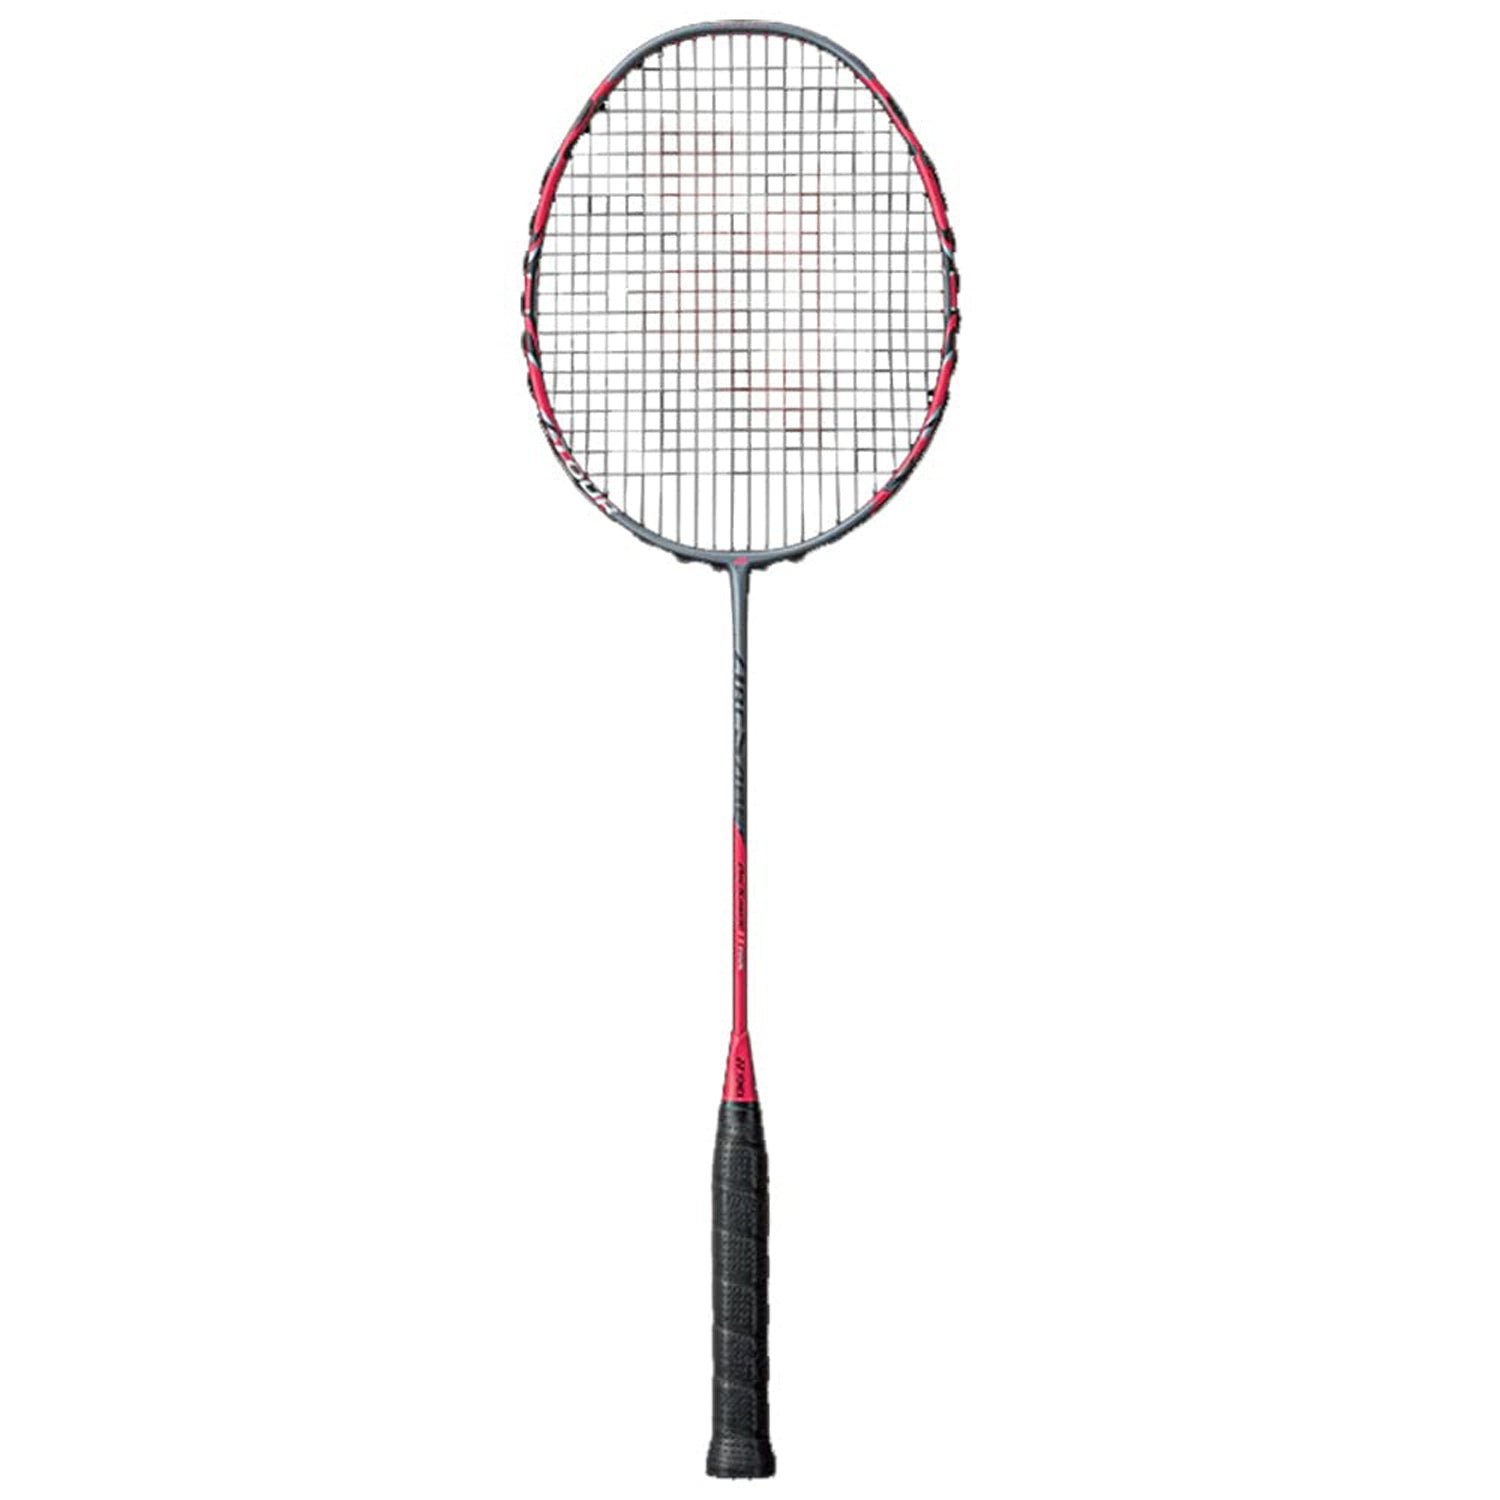 Yonex Arcsaber 11 Pro Badminton Racquet